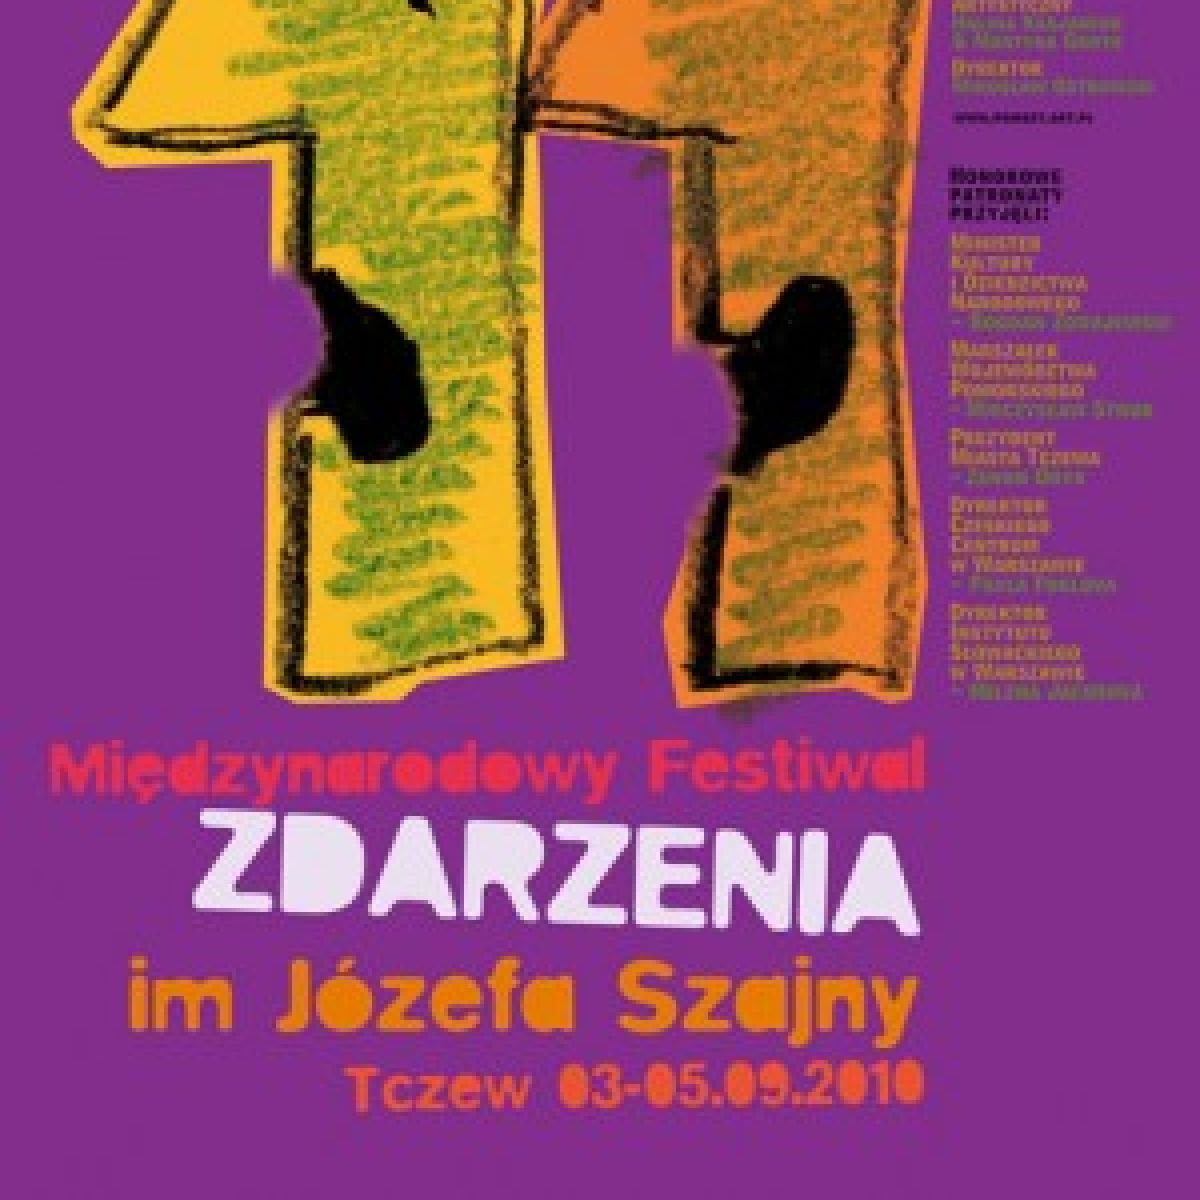 Międzynarodowy Festiwal ZDARZENIA im. Józefa Szajny